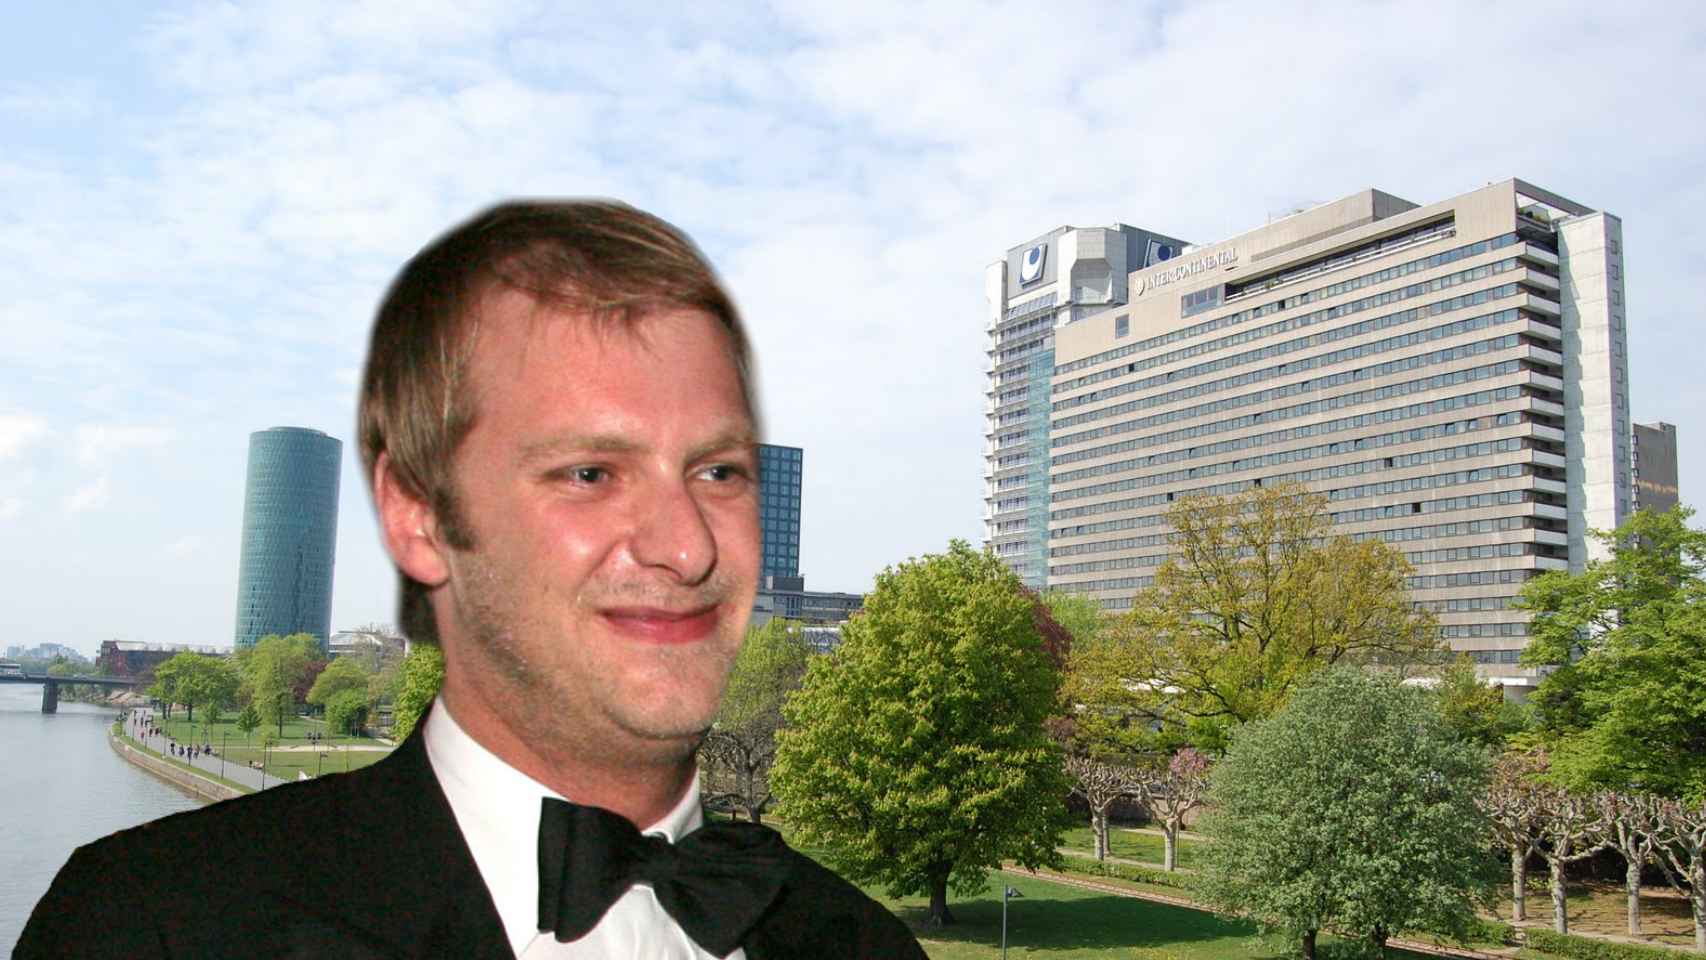 Carlos de Hohenzollern murió al precipitarse del piso 21 del hotel Intercontinental.